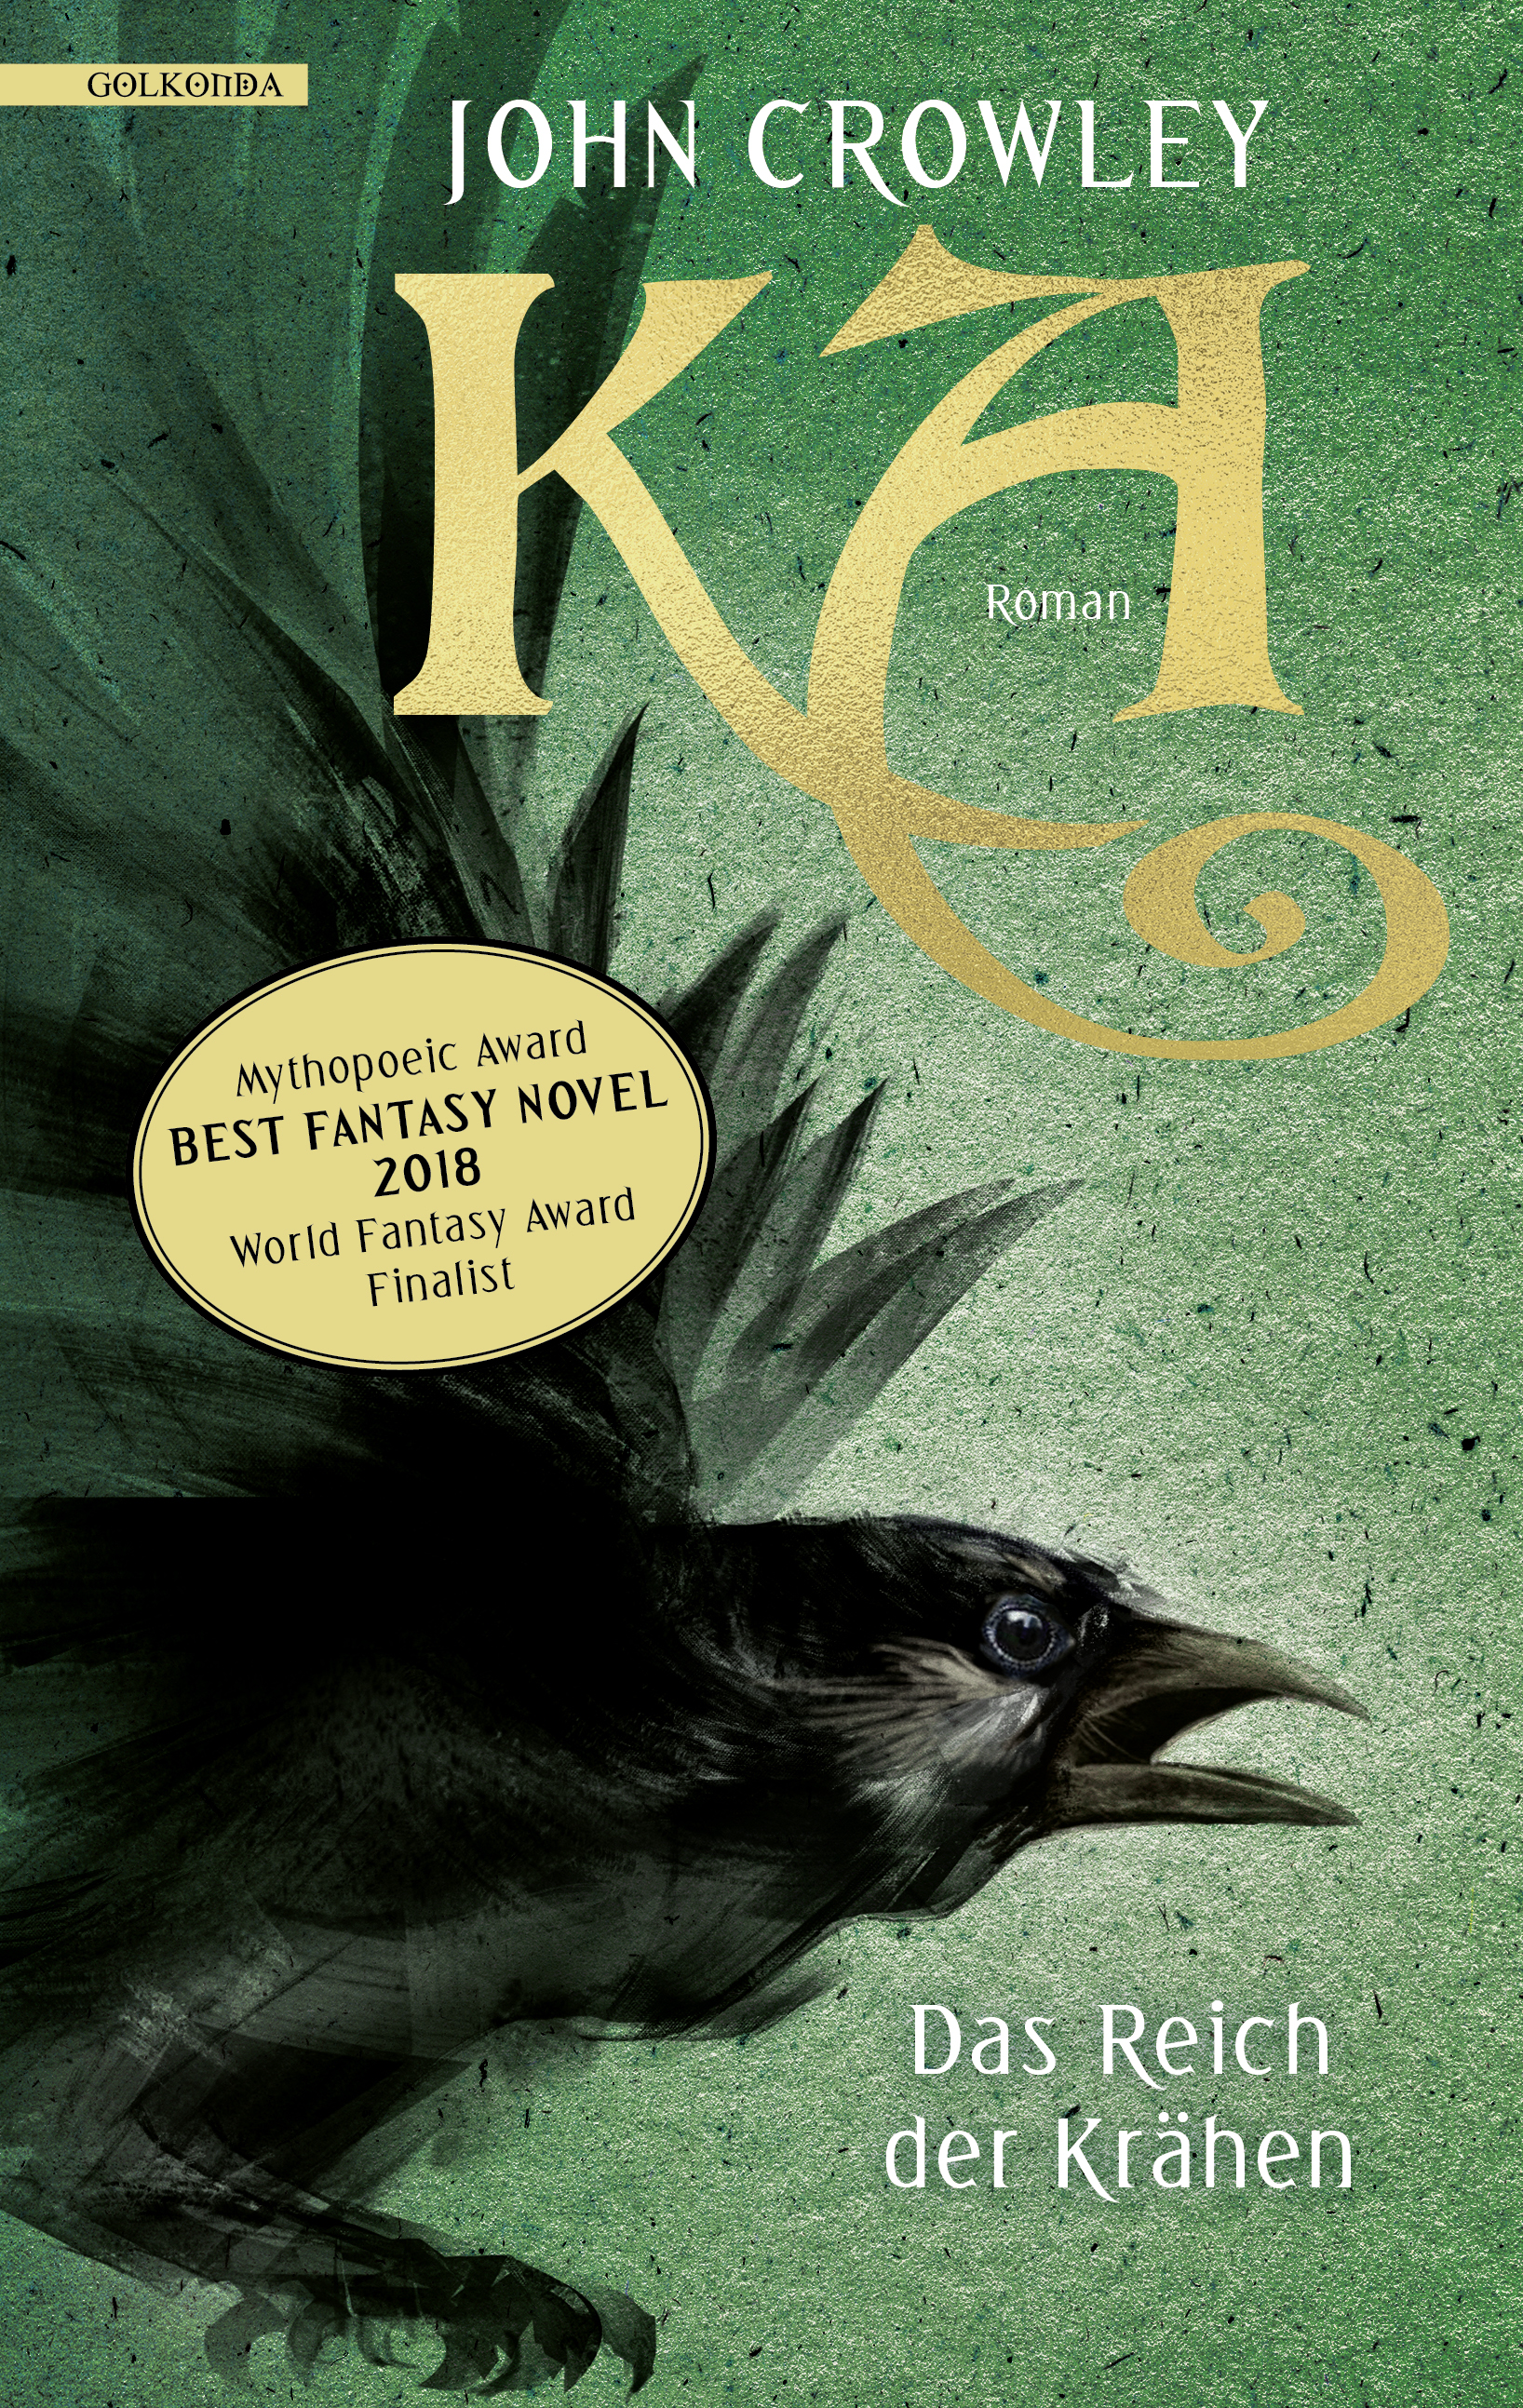 John Crowley | KA | Cover